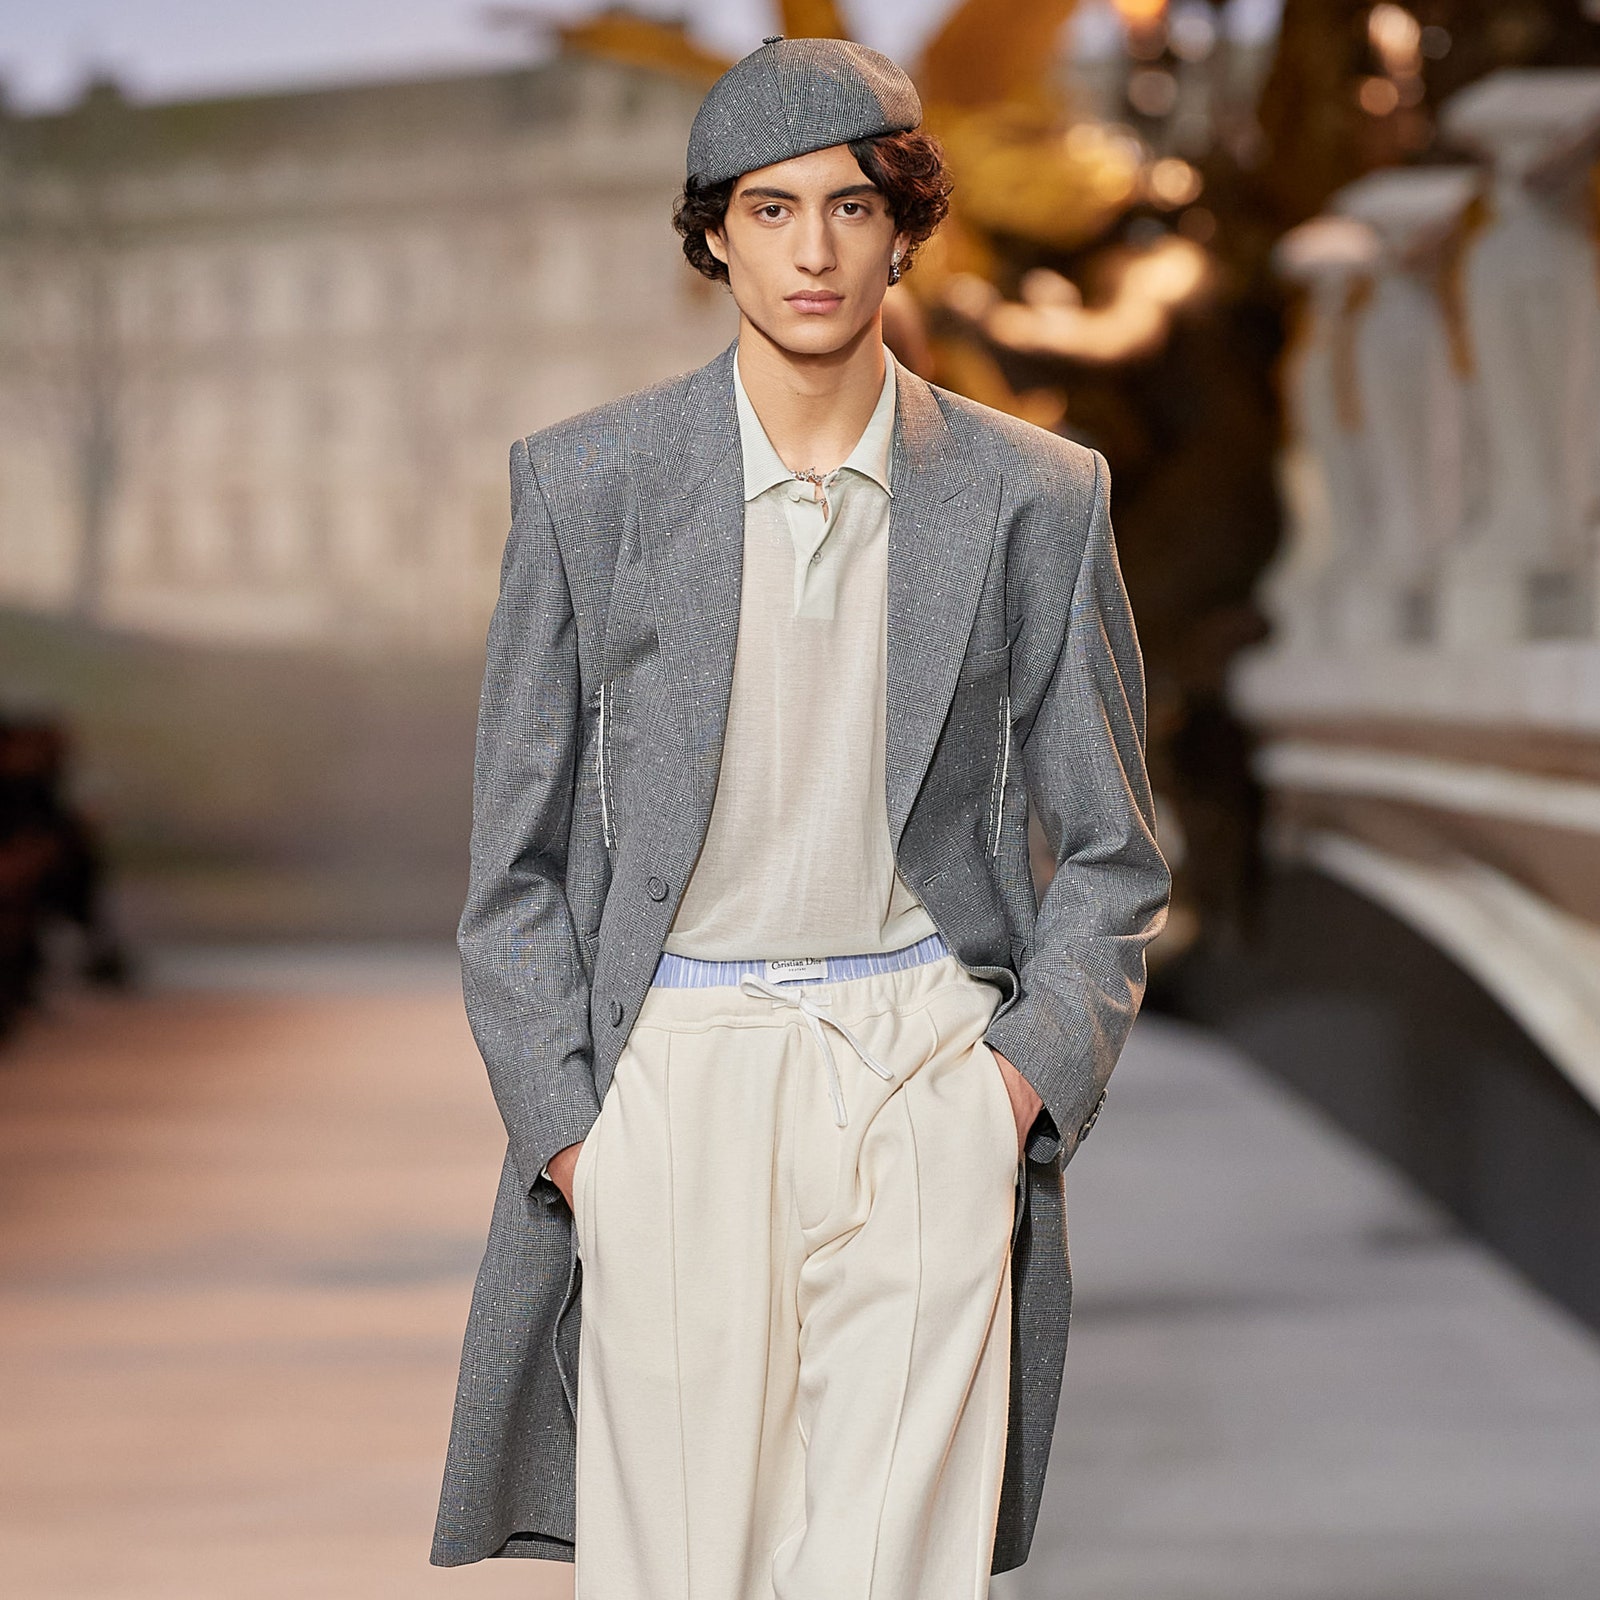 Береты, как на показах Dior и Kenzo осень-зима 2022, возвращаются в моду. Мы уже нашли самые красивые варианты